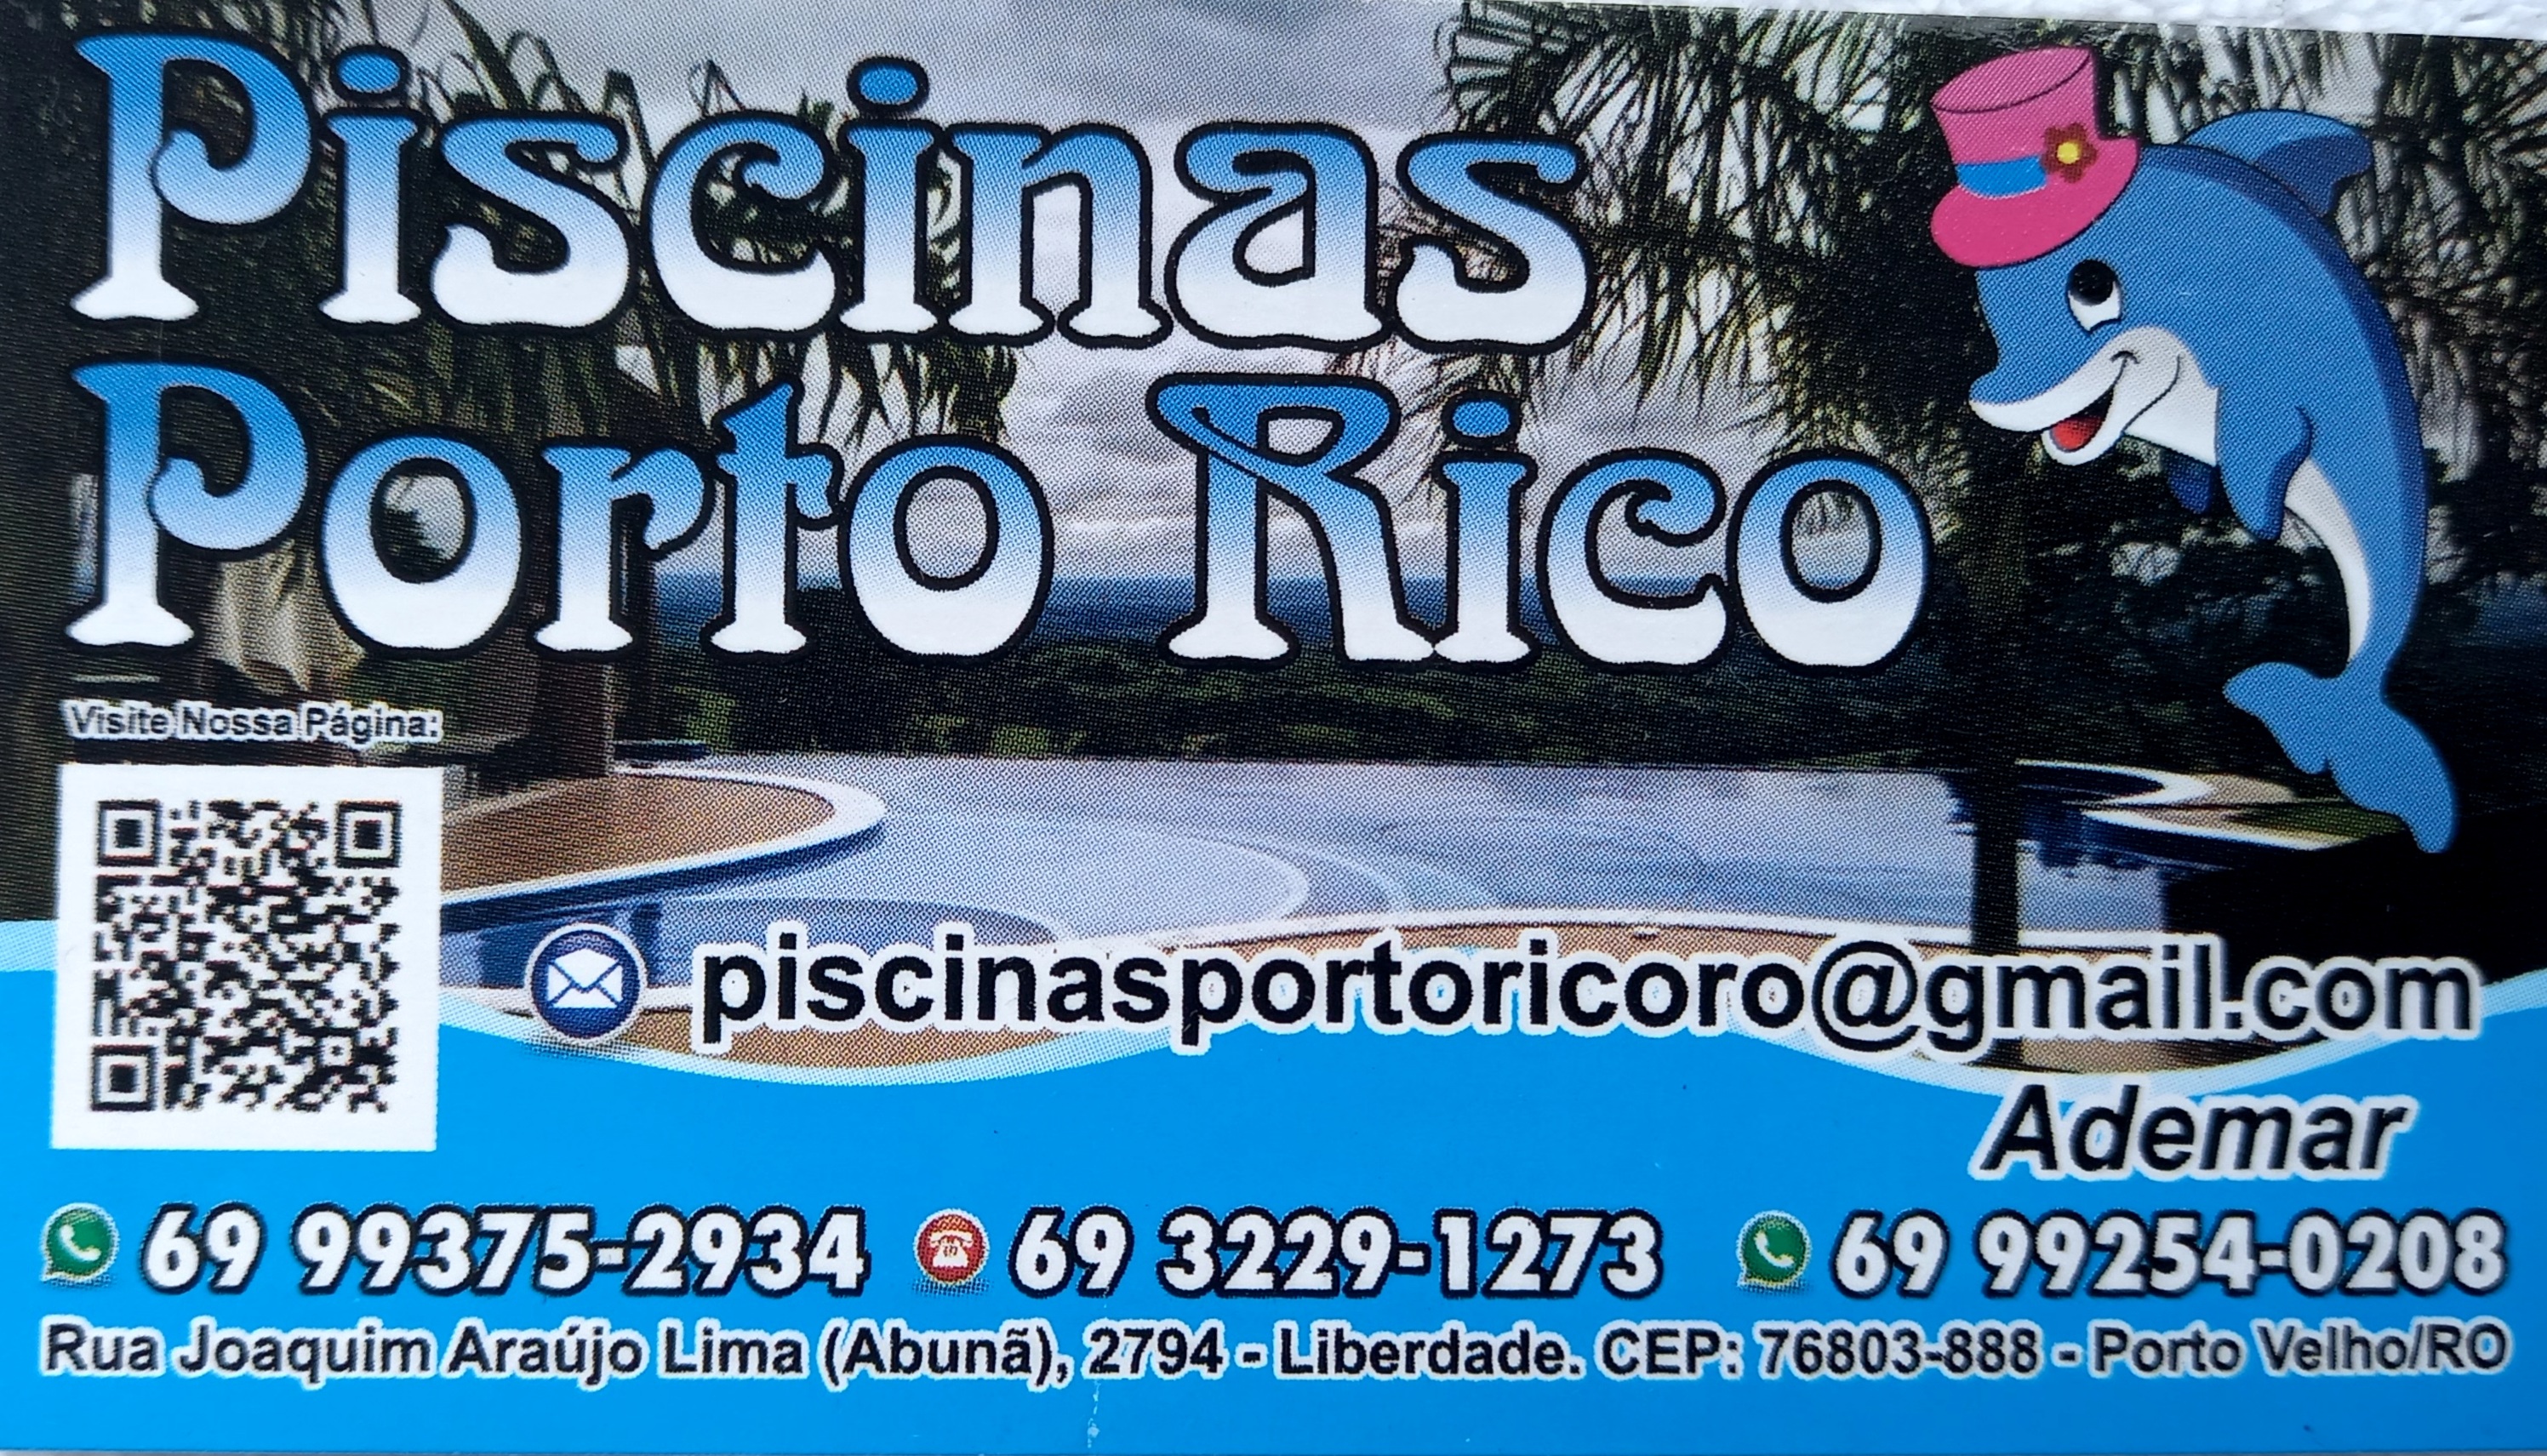 Produtos para Piscinas em Porto Velho - PISCINAS PORTO RICO 